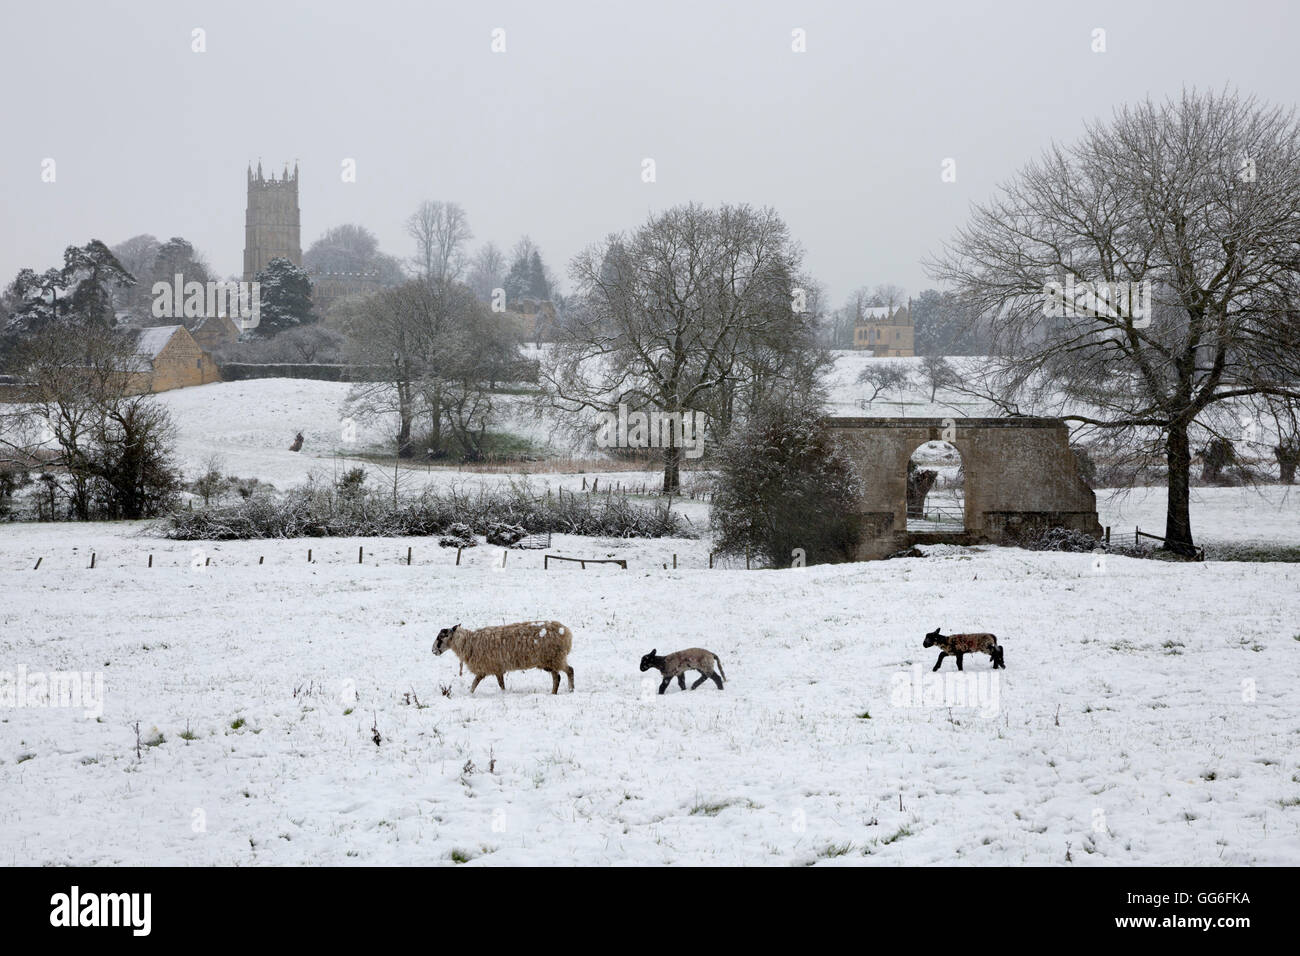 Église St James' et les brebis avec agneaux dans la neige, Chipping Campden, Cotswolds, Gloucestershire, Angleterre, Royaume-Uni, Europe Banque D'Images